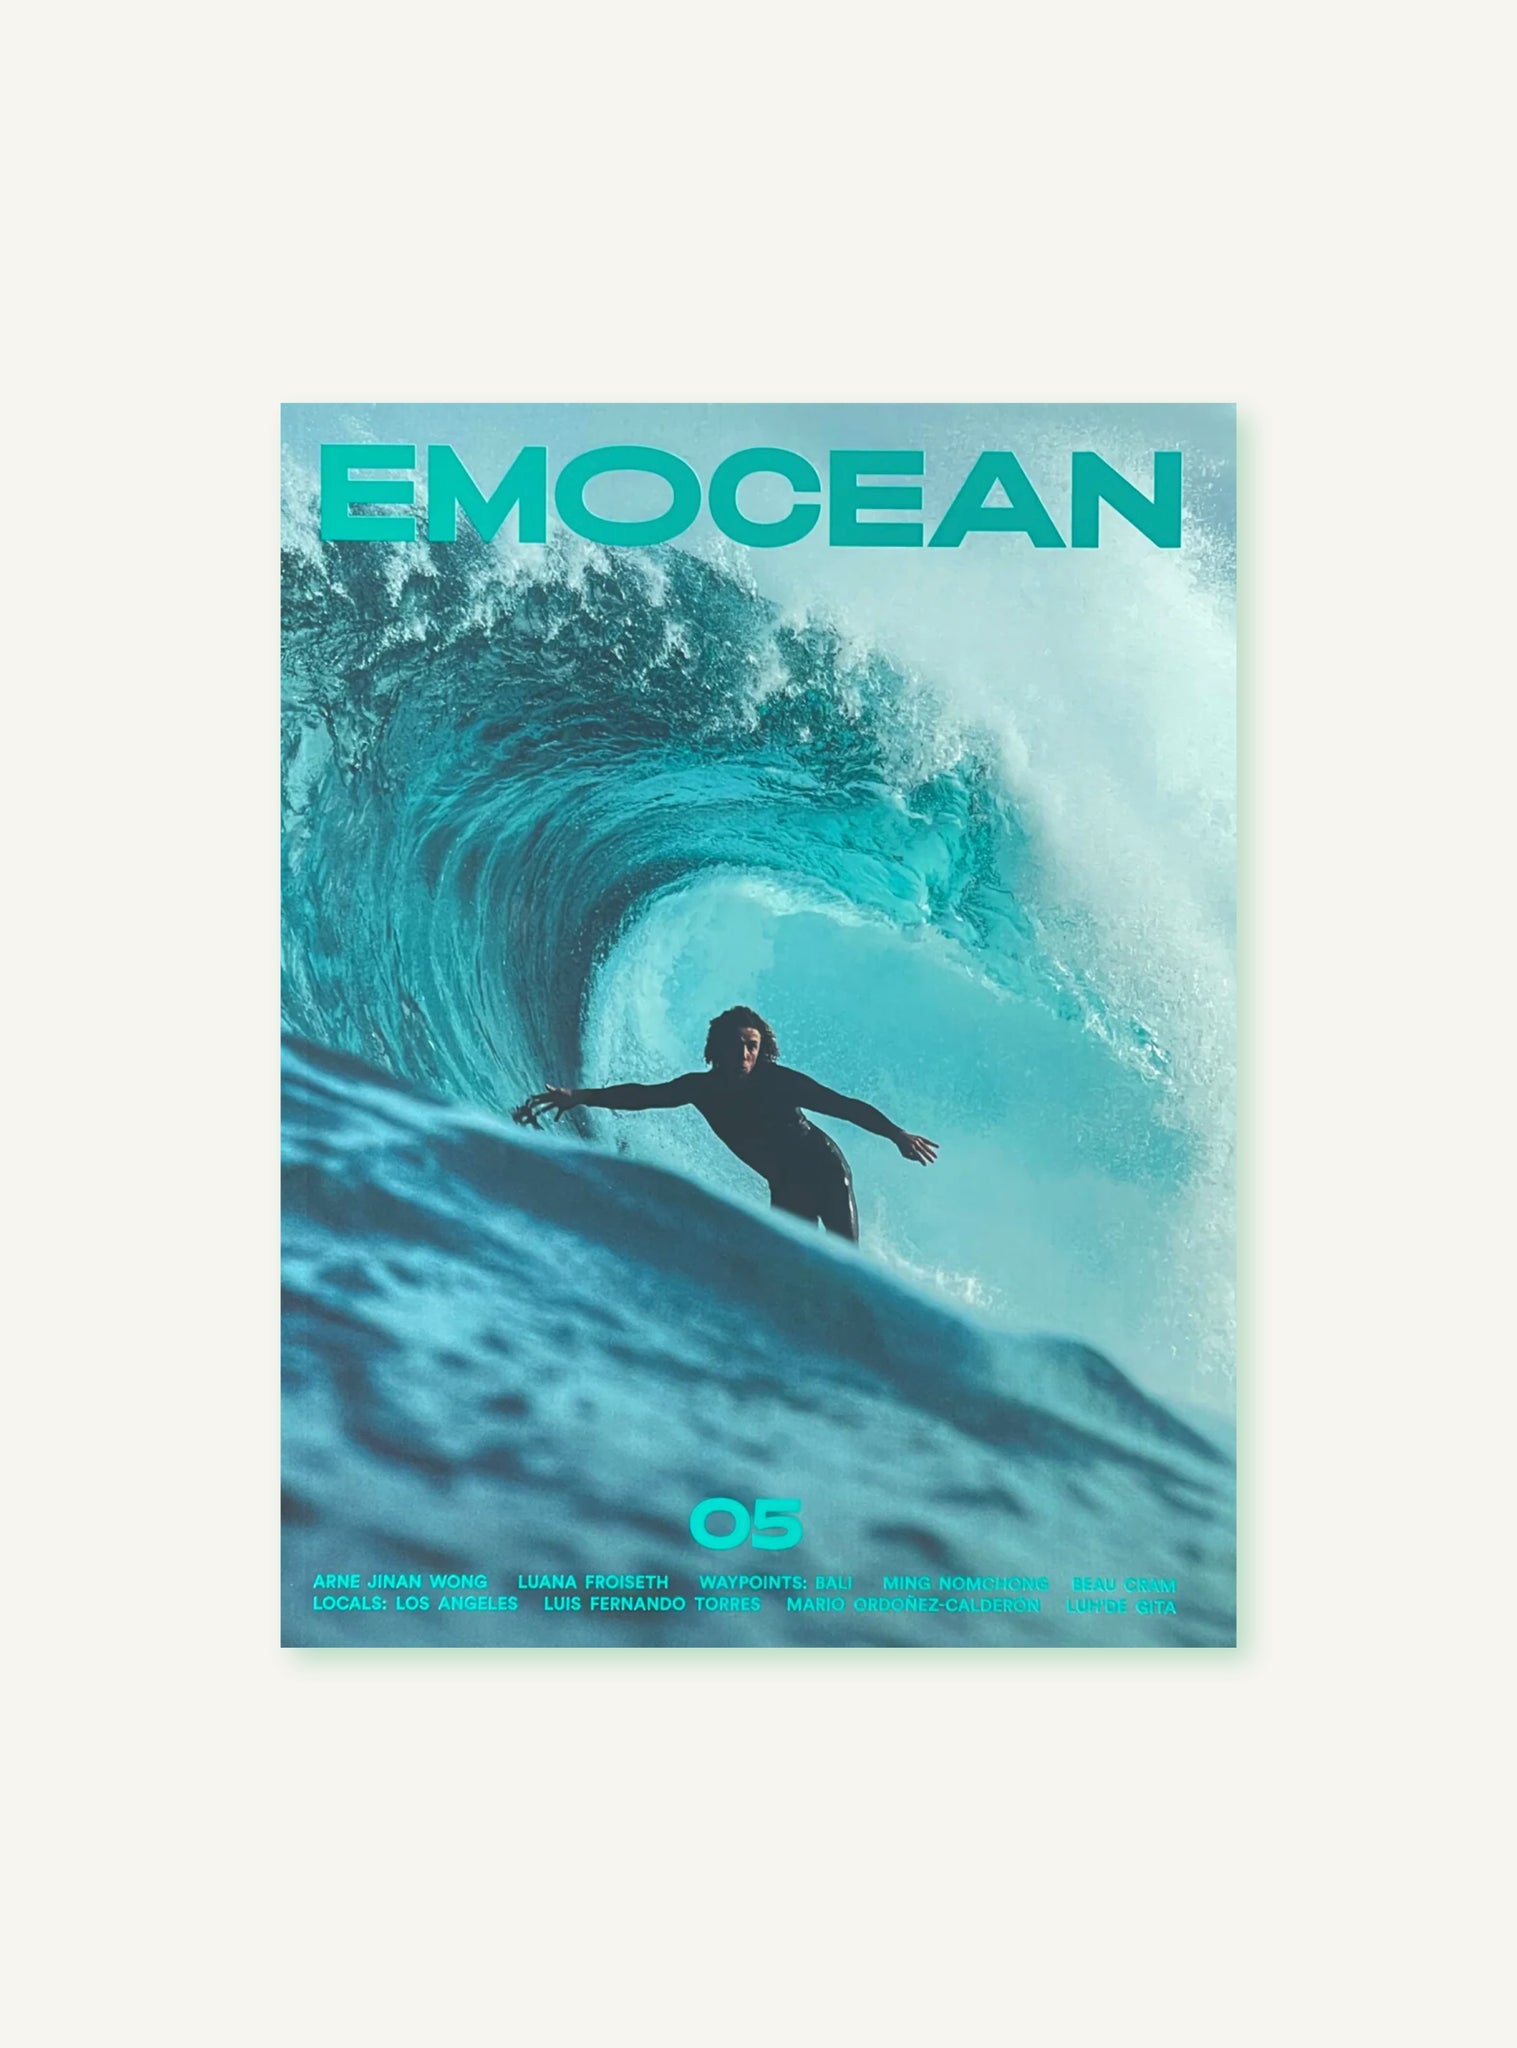 EMOCEAN Issue 05—Fear